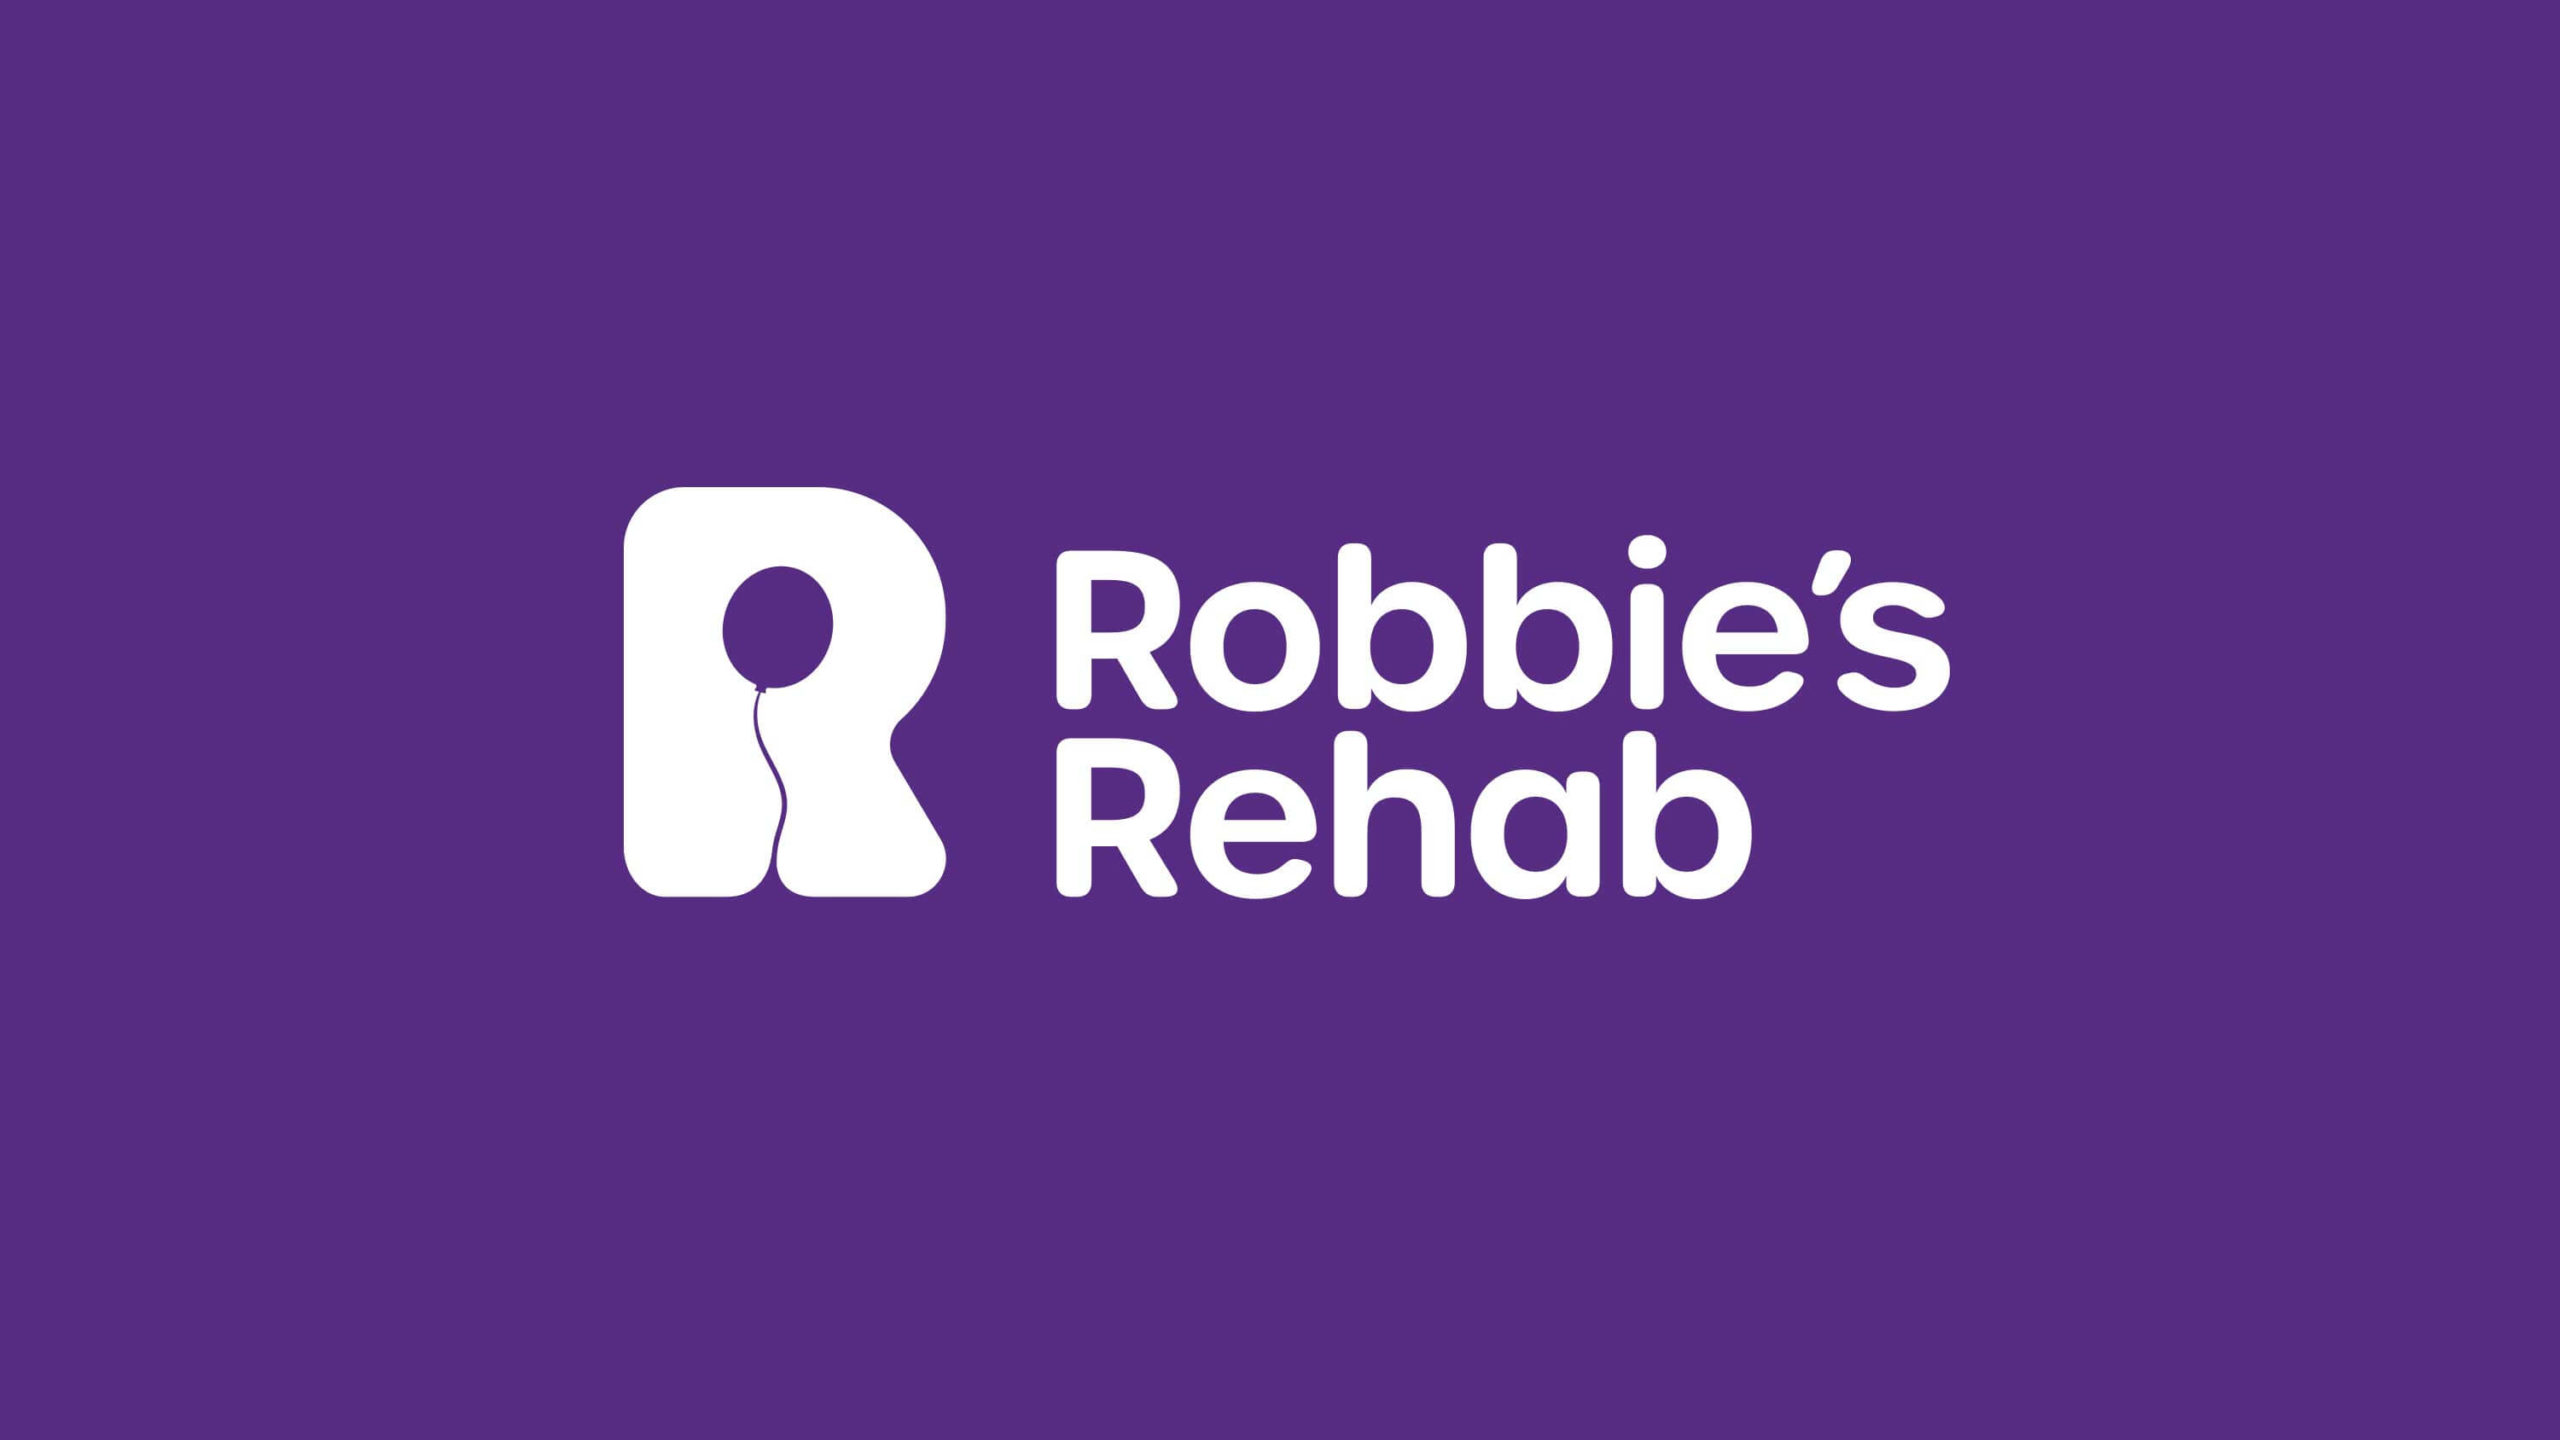 Robbie's Rehab brand identity